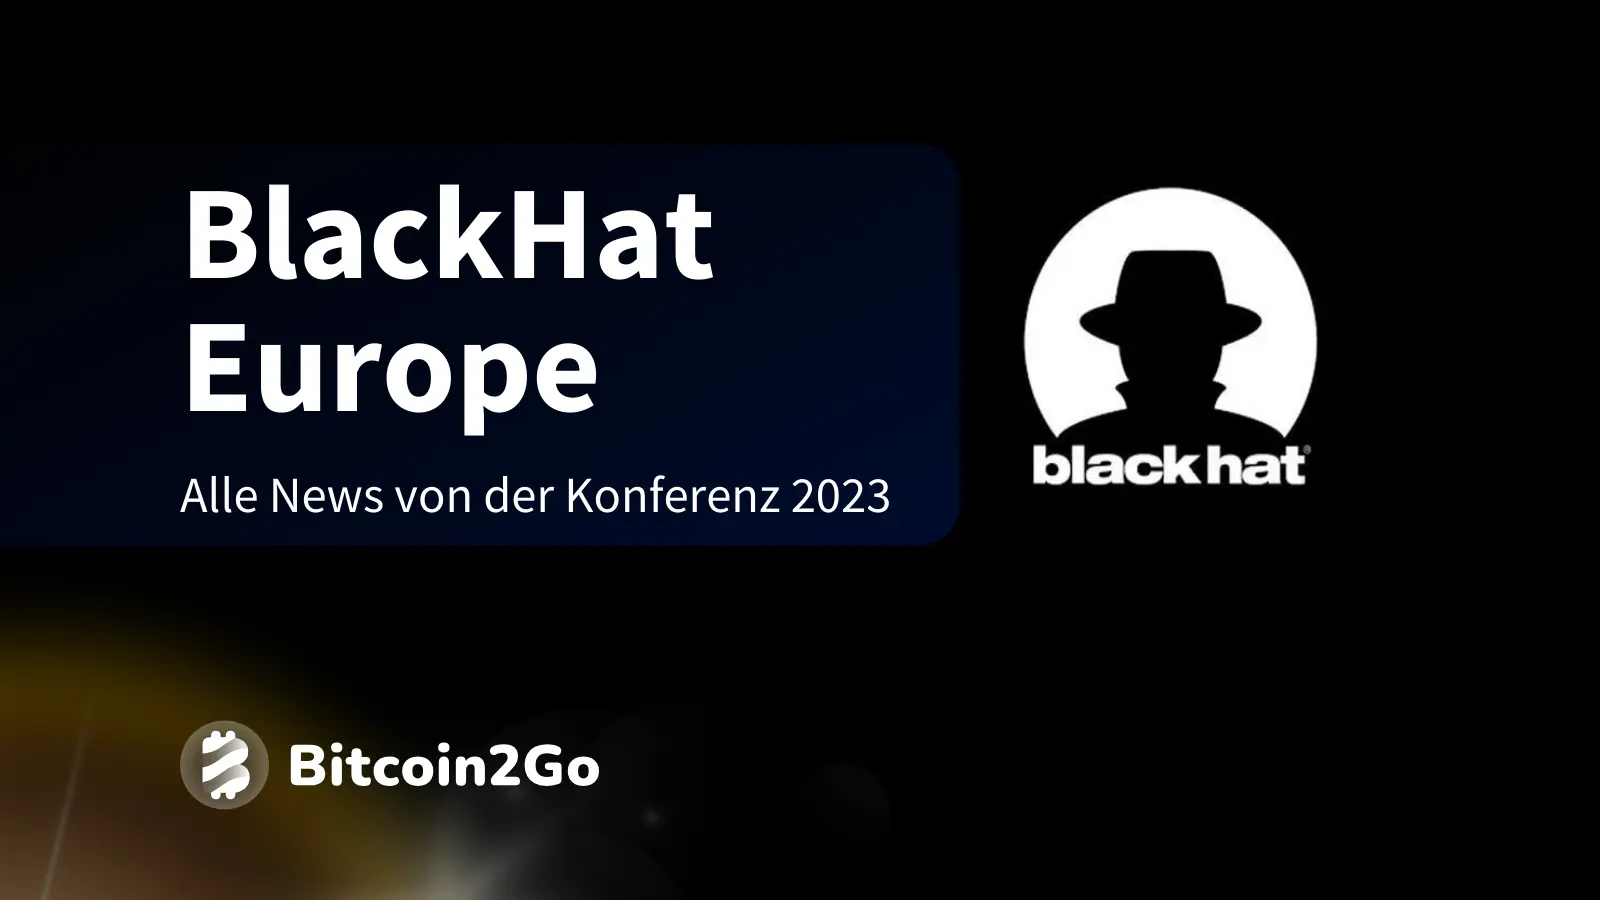 BlackHat Europe News und Erkenntnisse aus London